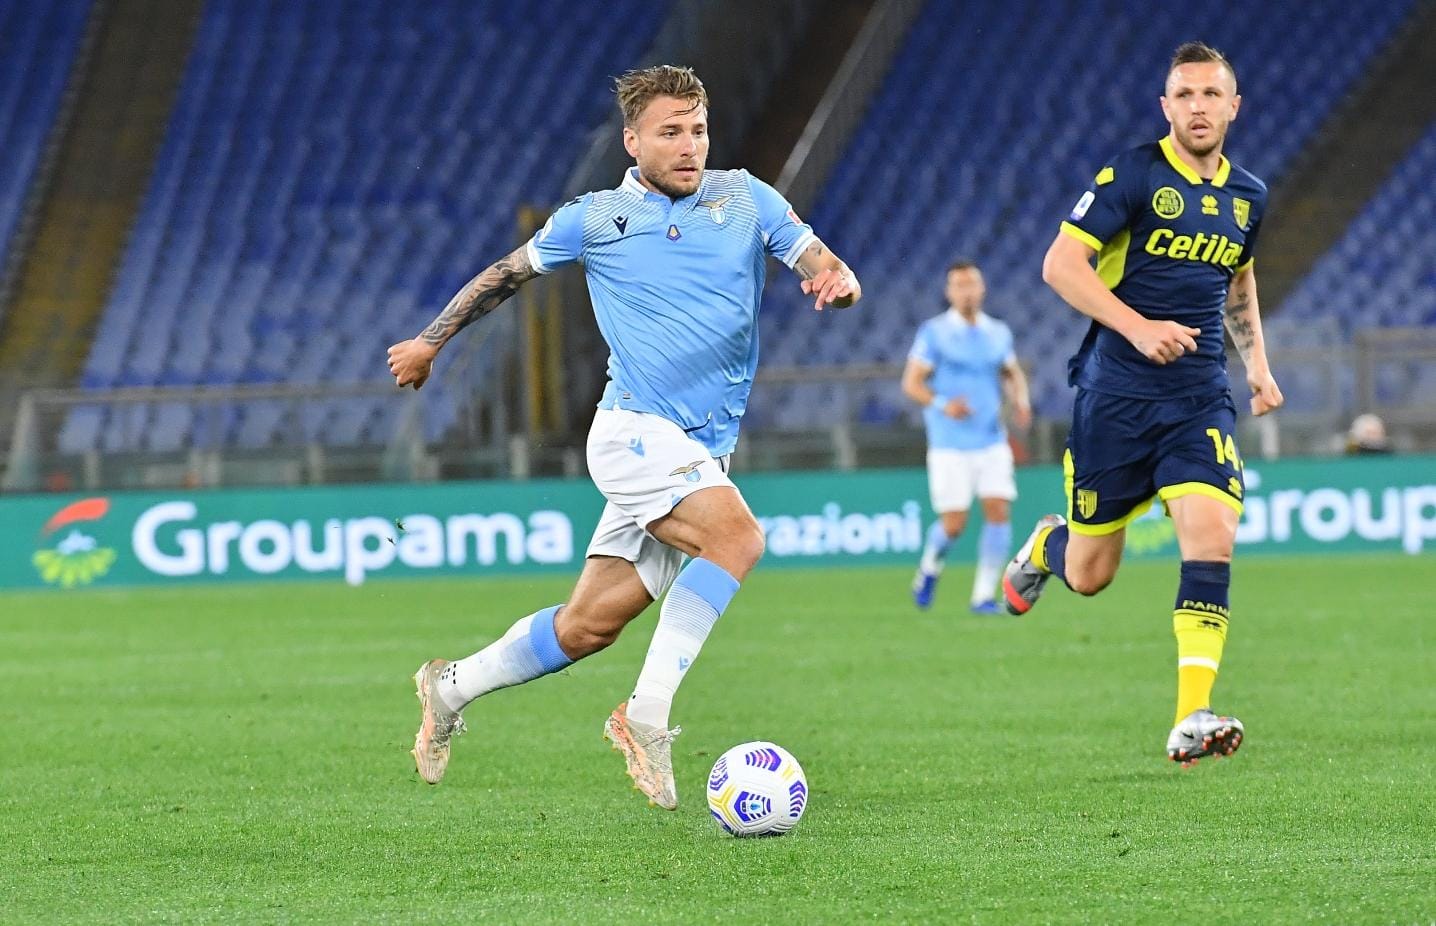 LA CRONACA | Serie A, Lazio-Parma 1-0: Immobile evita la nemesi